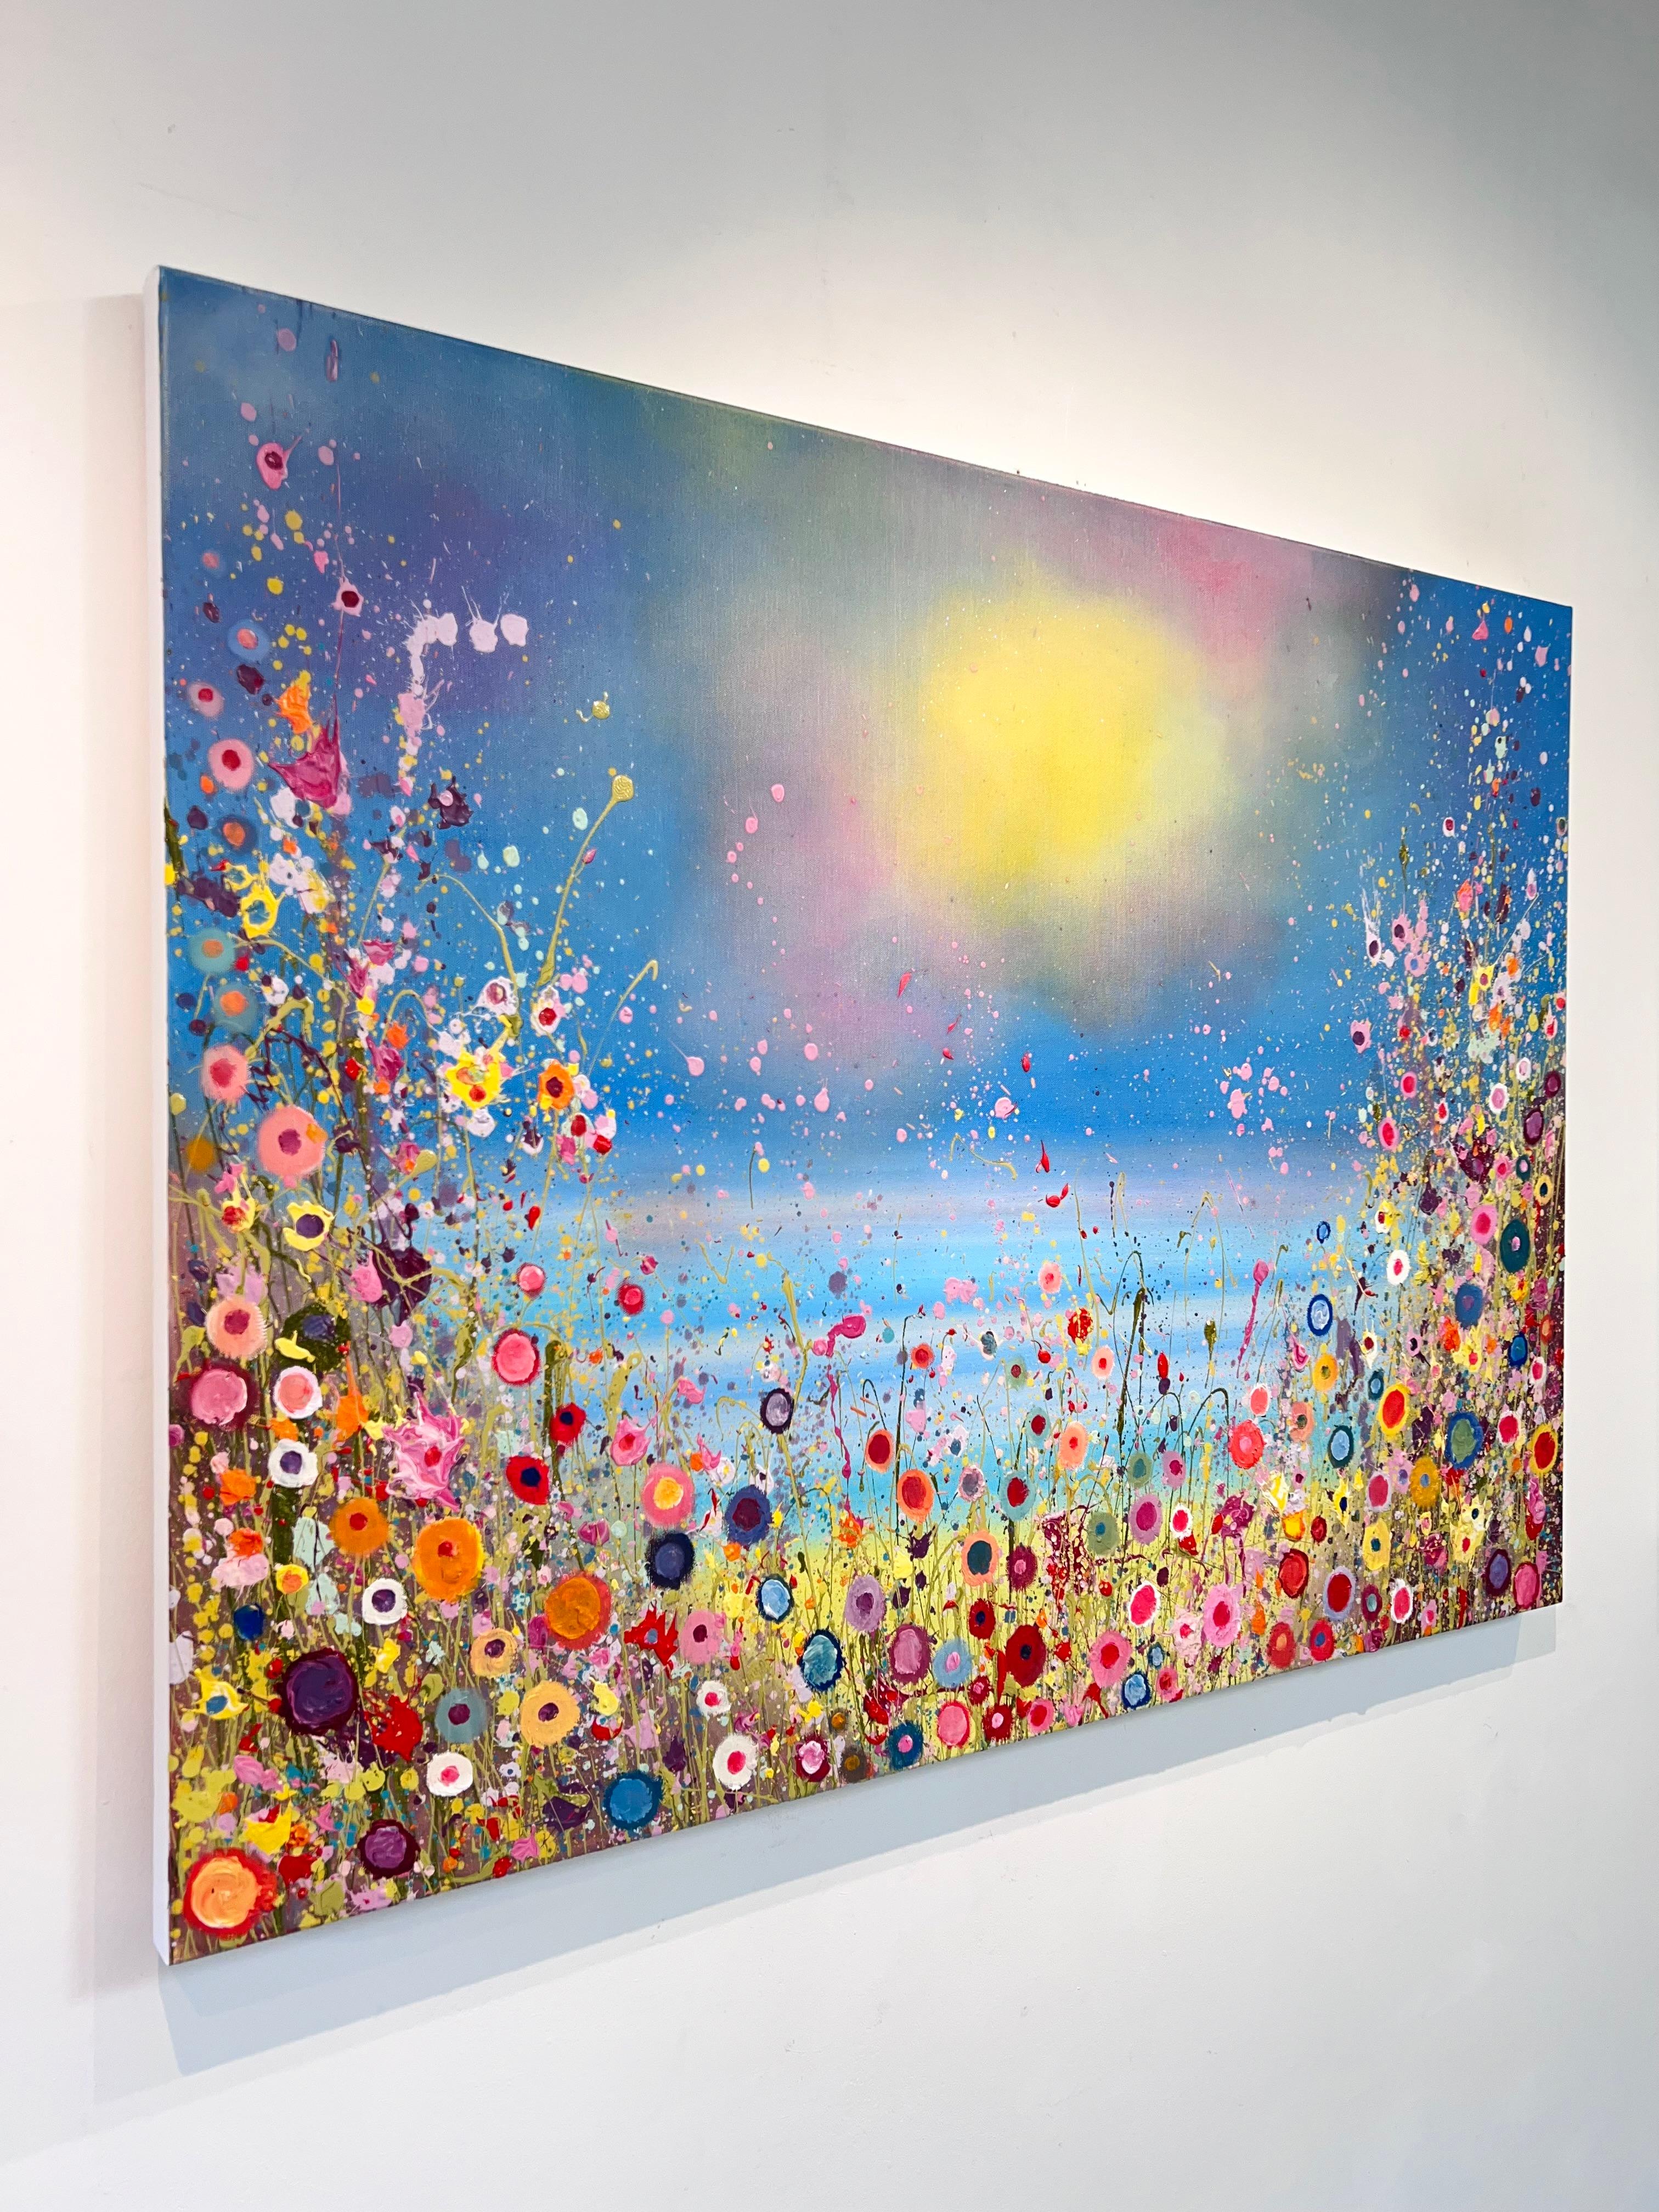 Les sirènes chantent Sweet Love Songs - original floral moderne, peinture à l'huile - Painting de Yvonne Coomber